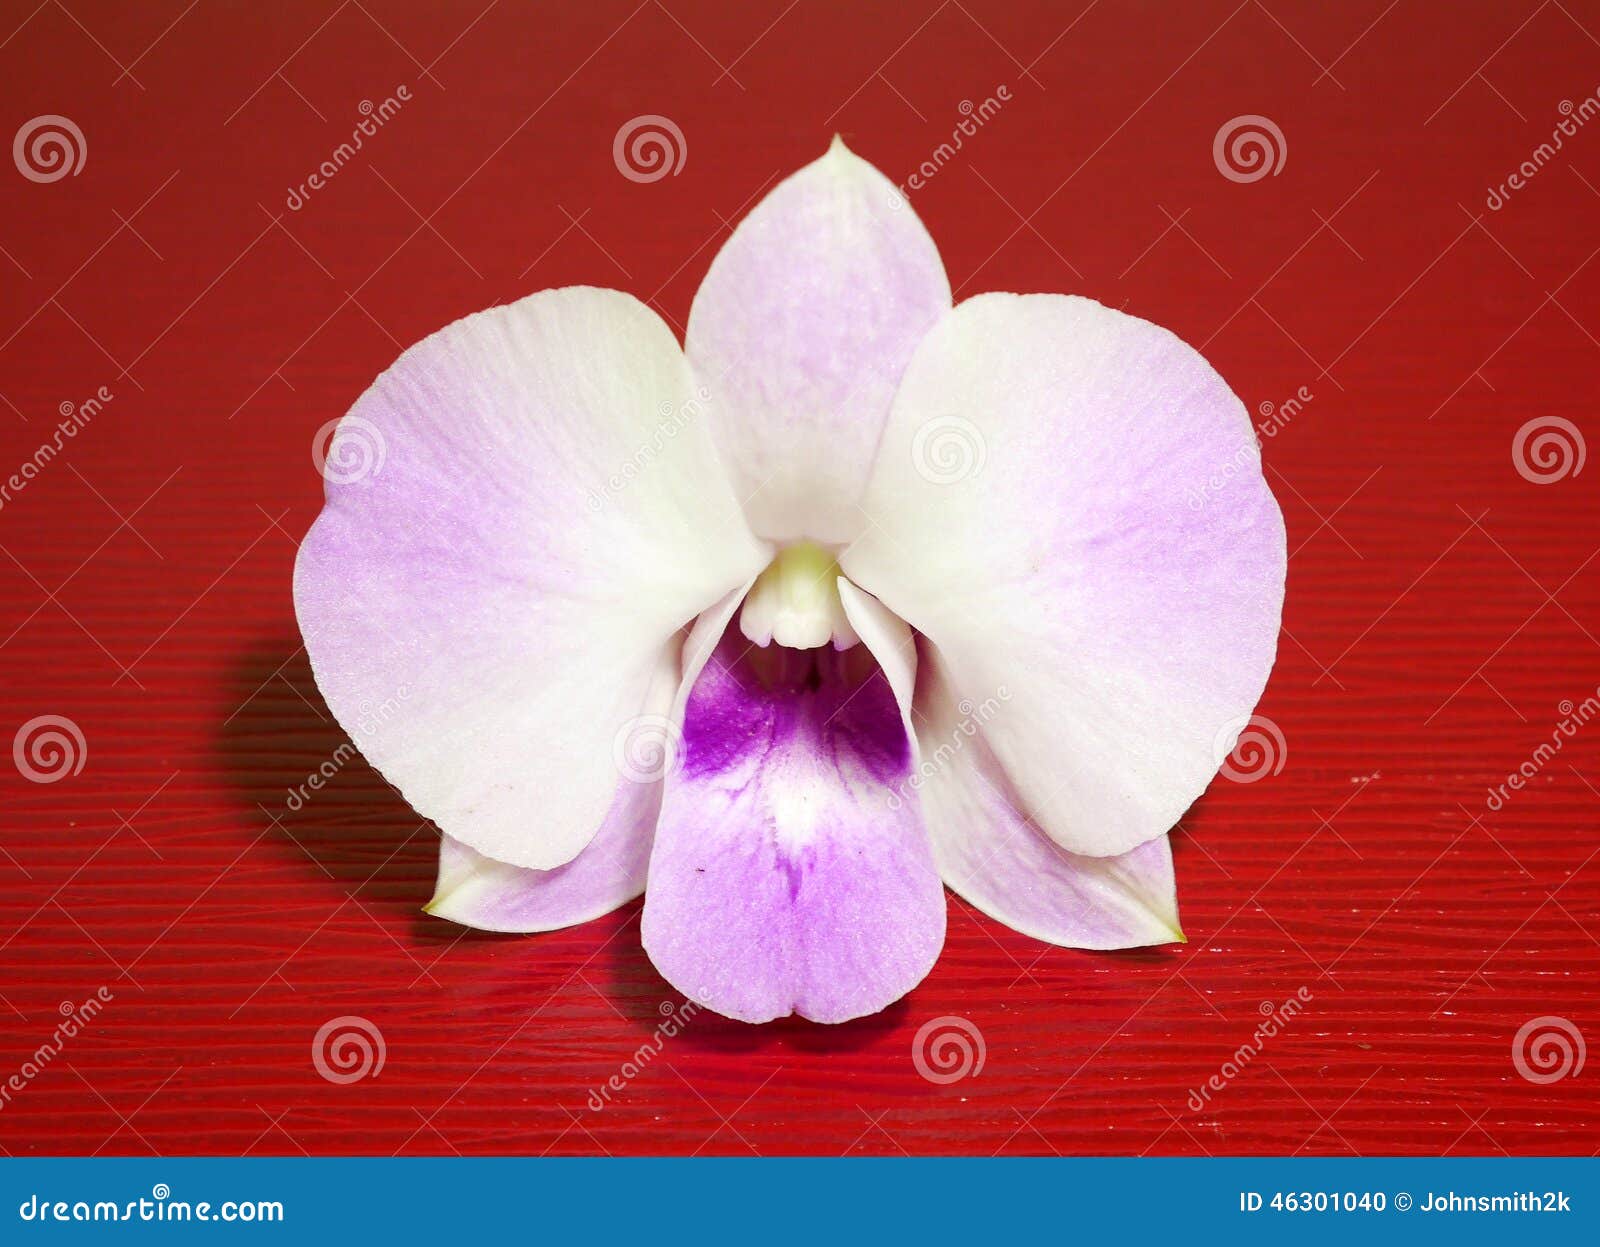 Orquídea blanca y violeta foto de archivo. Imagen de cubo - 46301040